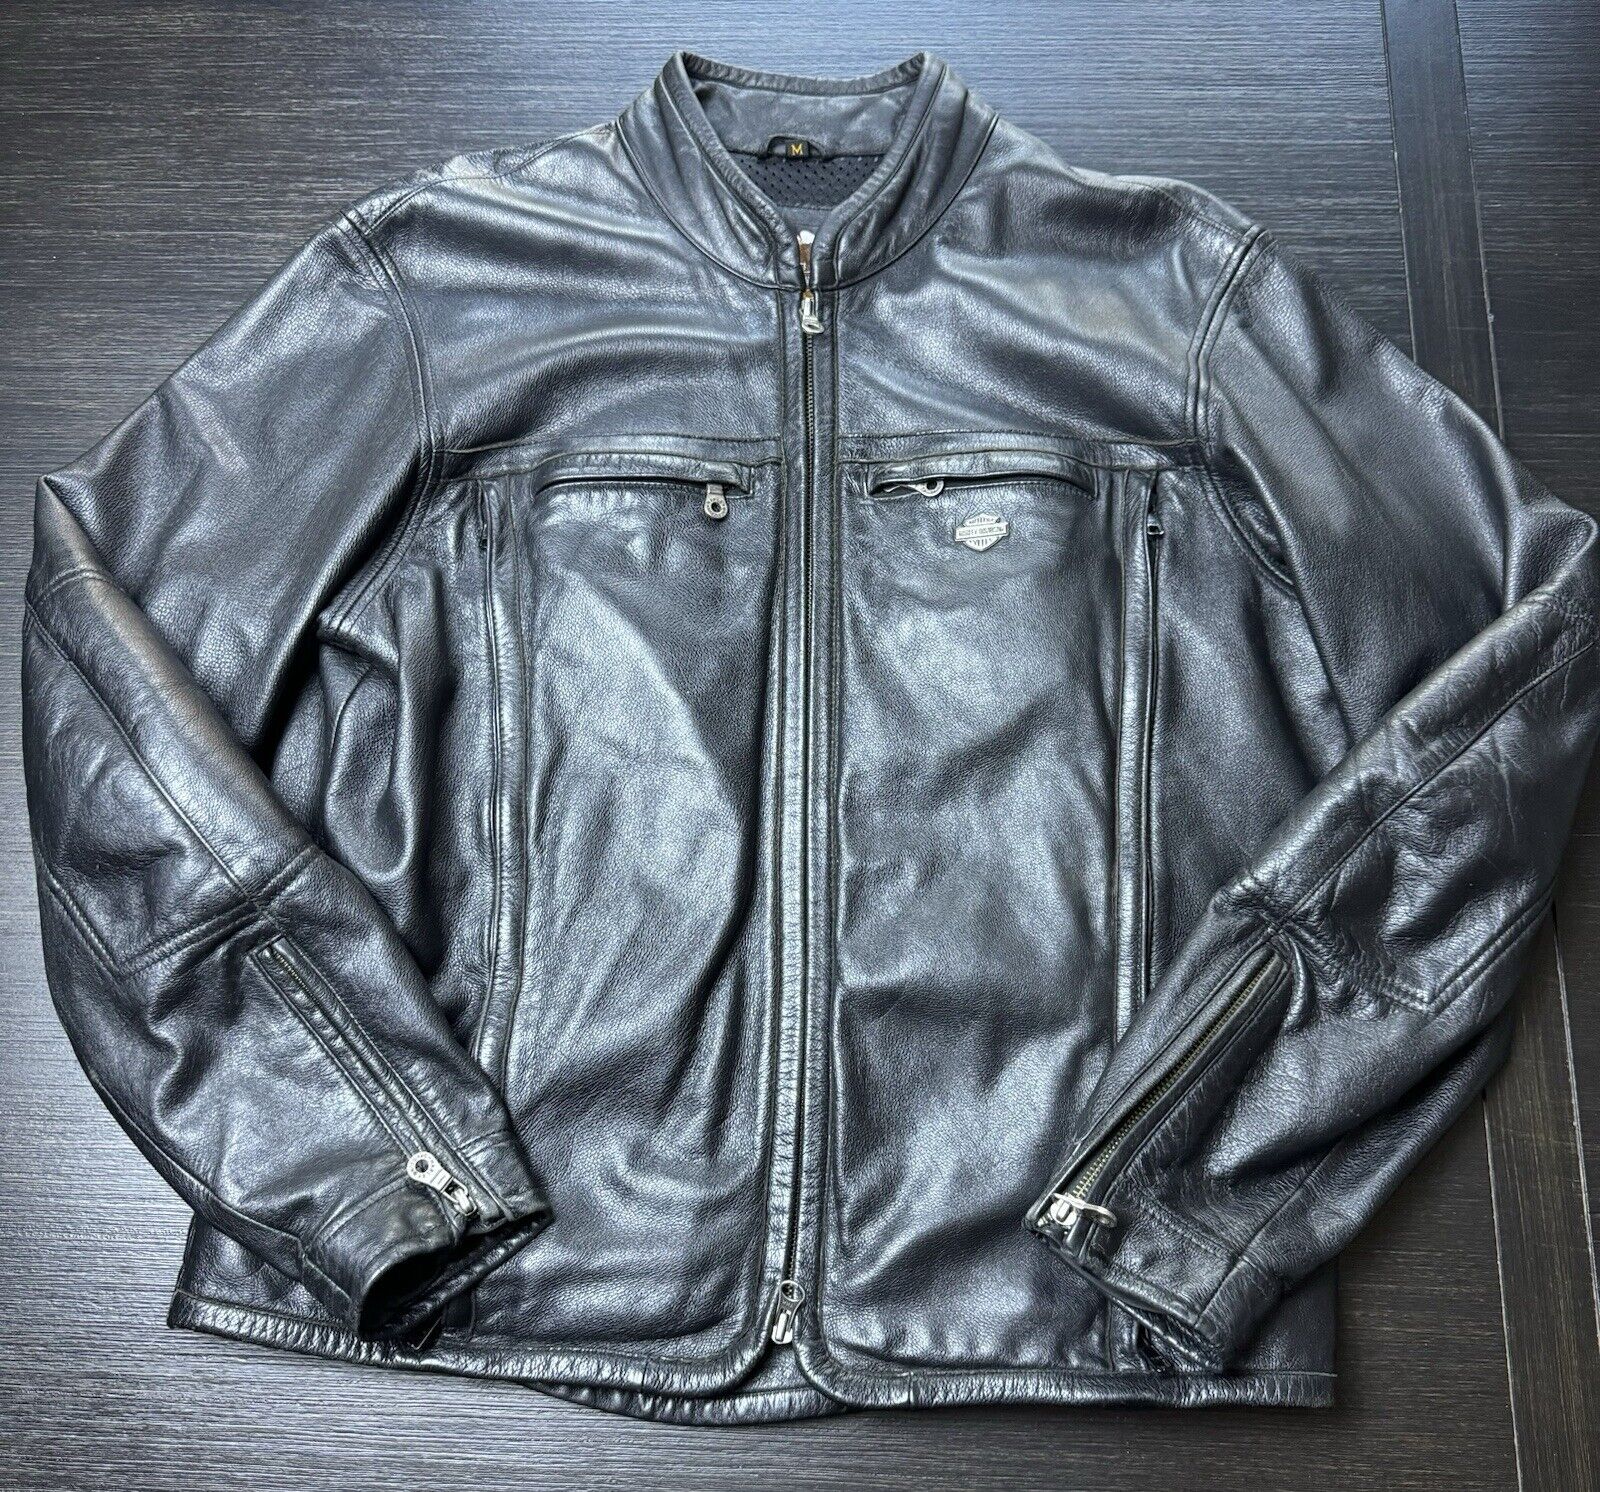 Harley Davidson Men’s Vented Leather Jacket Size M 